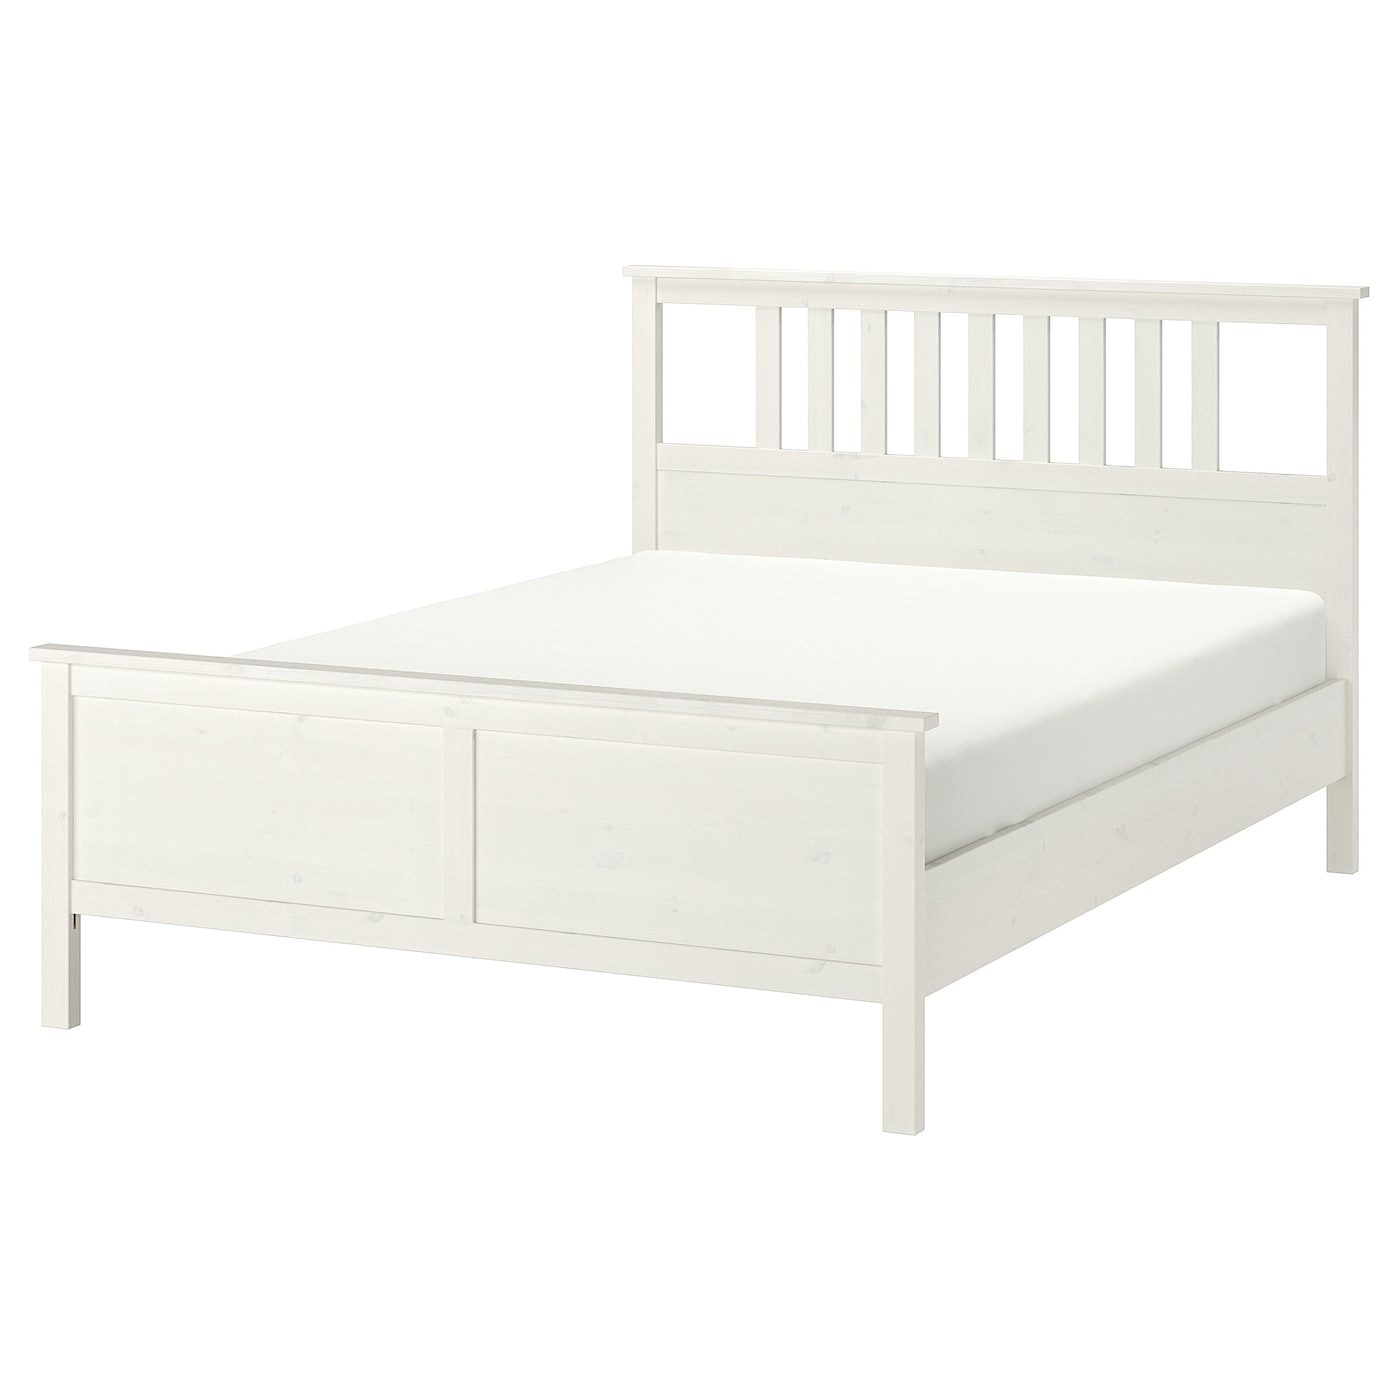 Каркас кровати - IKEA HEMNES, 200х160 см, белый, ХЕМНЕС ИКЕА